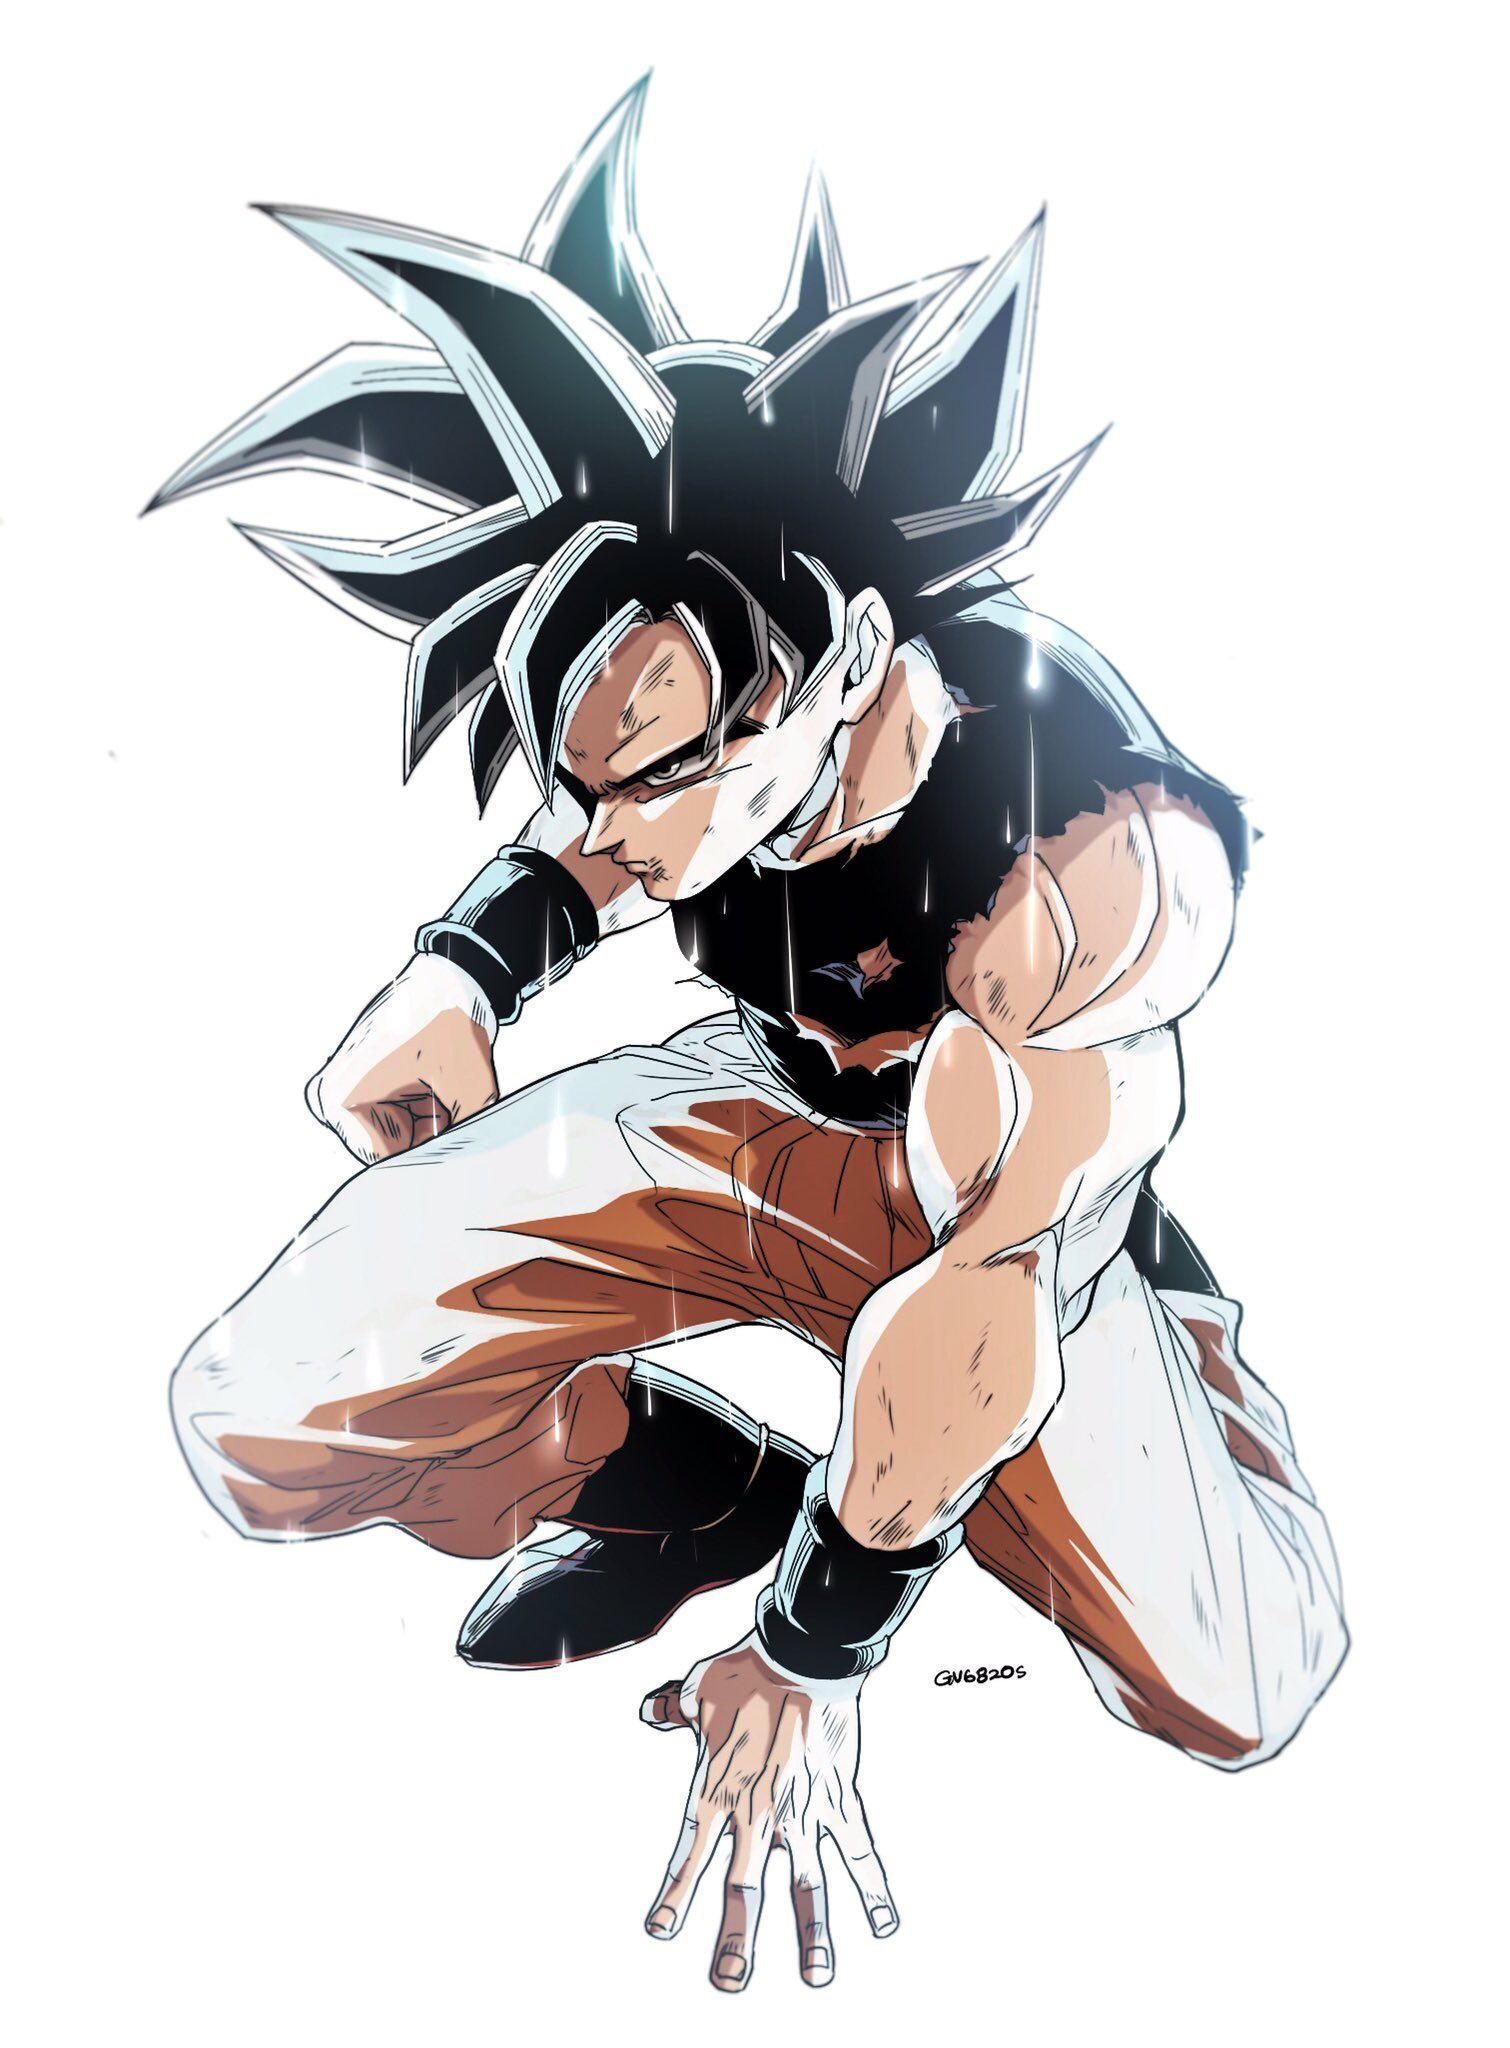 UI Goku !!! ..art by Twitter @GV6820s